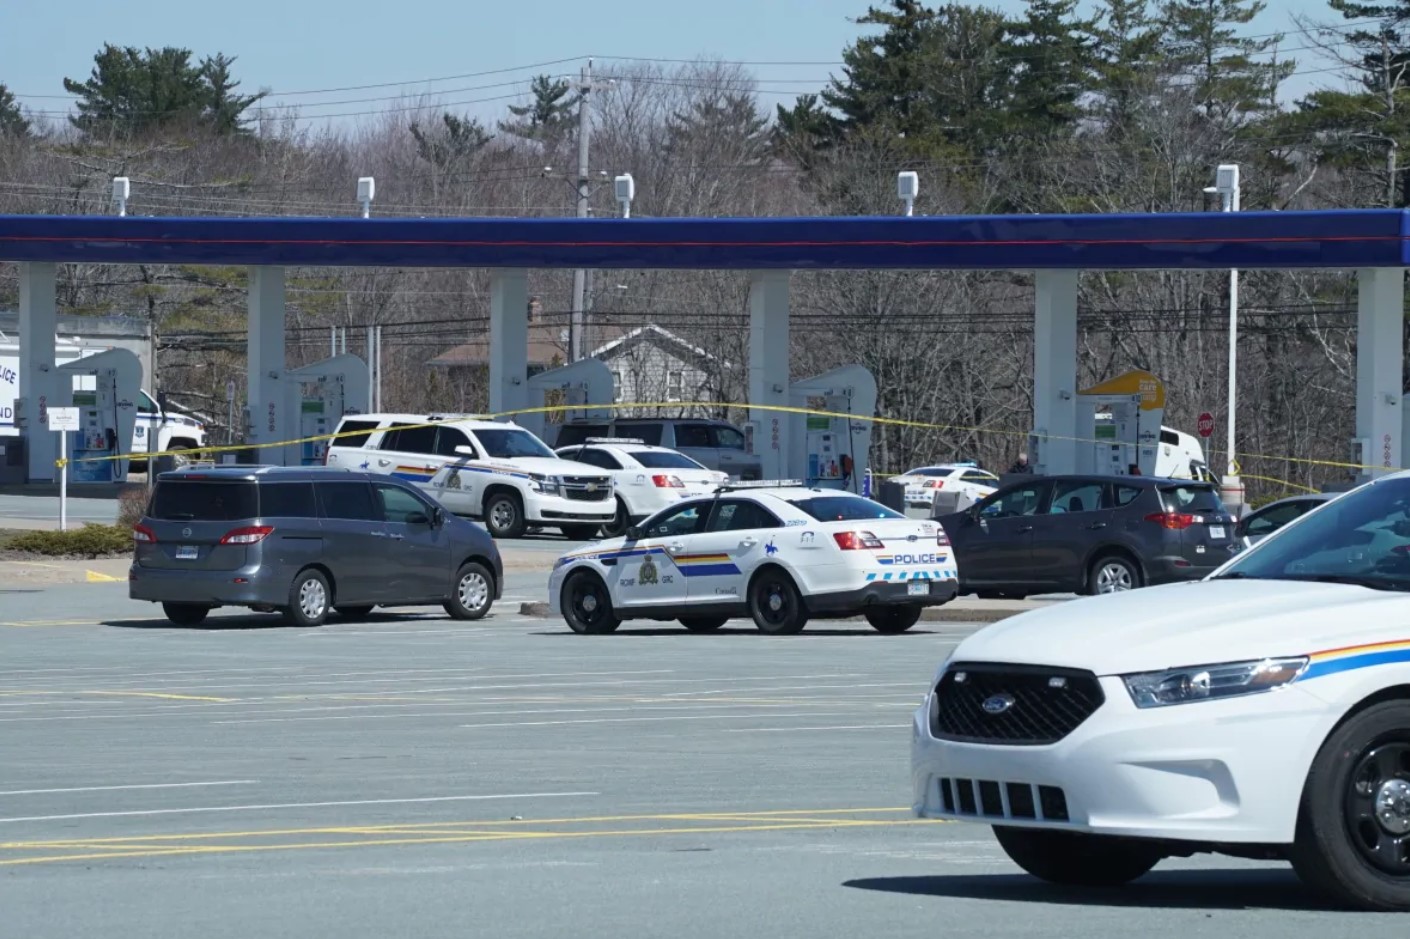 В Канаде мужчина в форме полицейского застрелил 17 человек